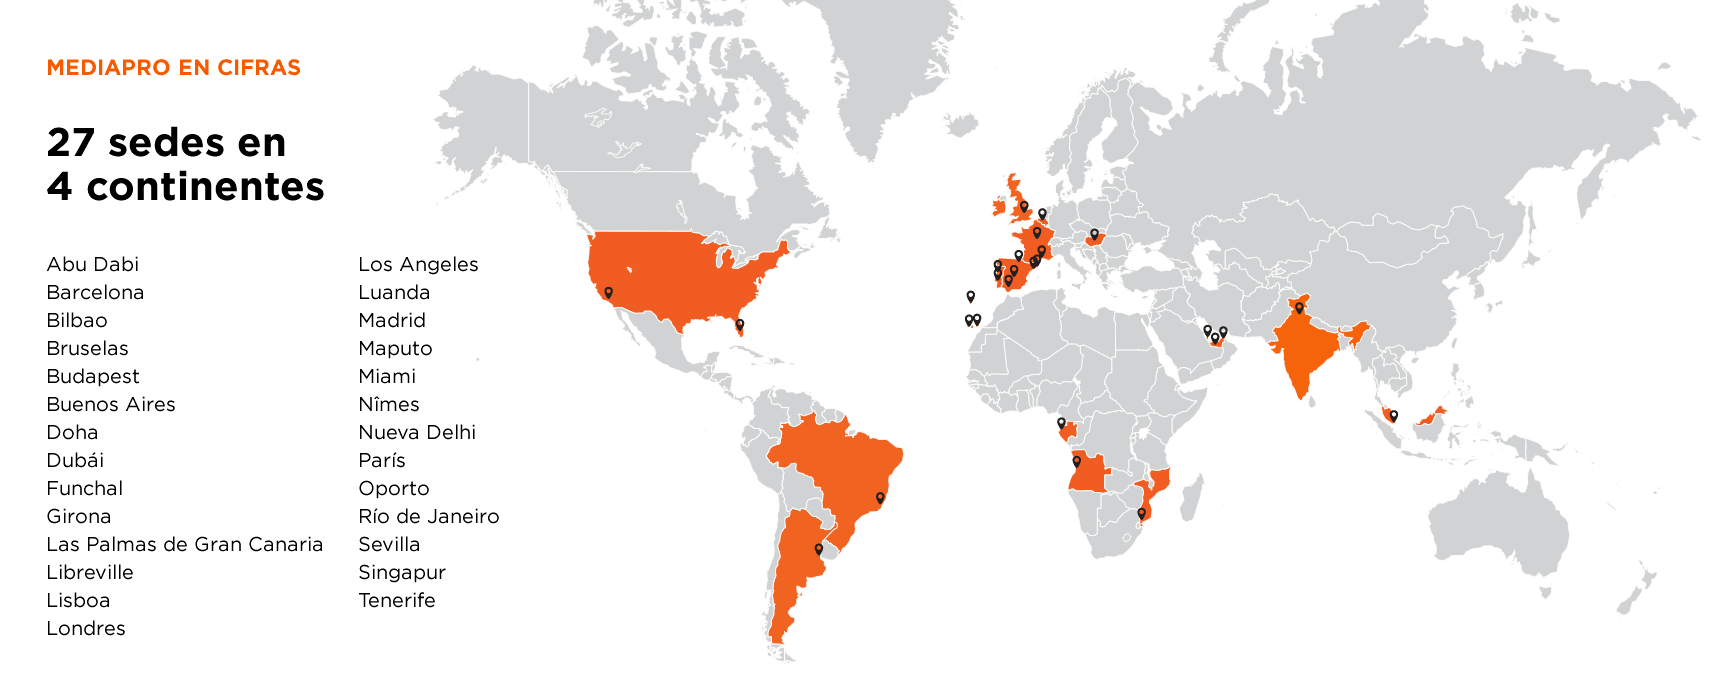 27 sedes en 4 continentes